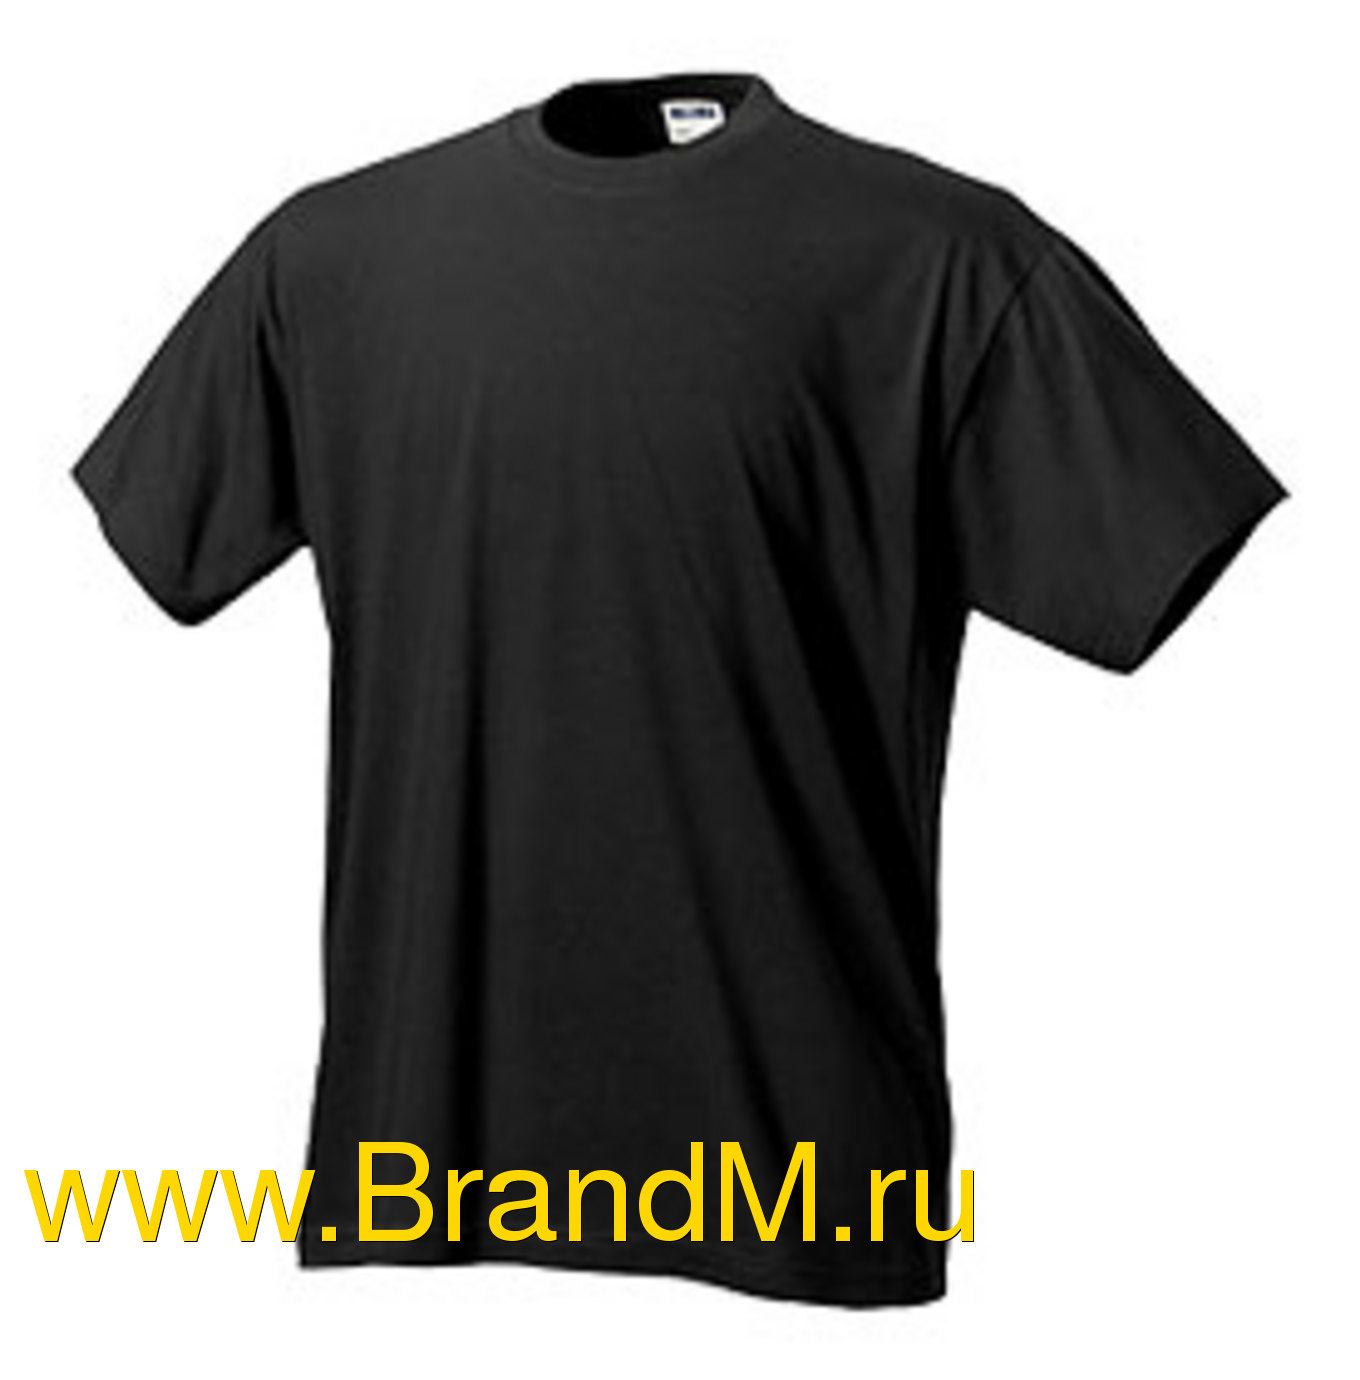 Описание: Где купить футболку в Березниках. Прикольные майки в Новосибирске. Футболка. Автор: Лолла